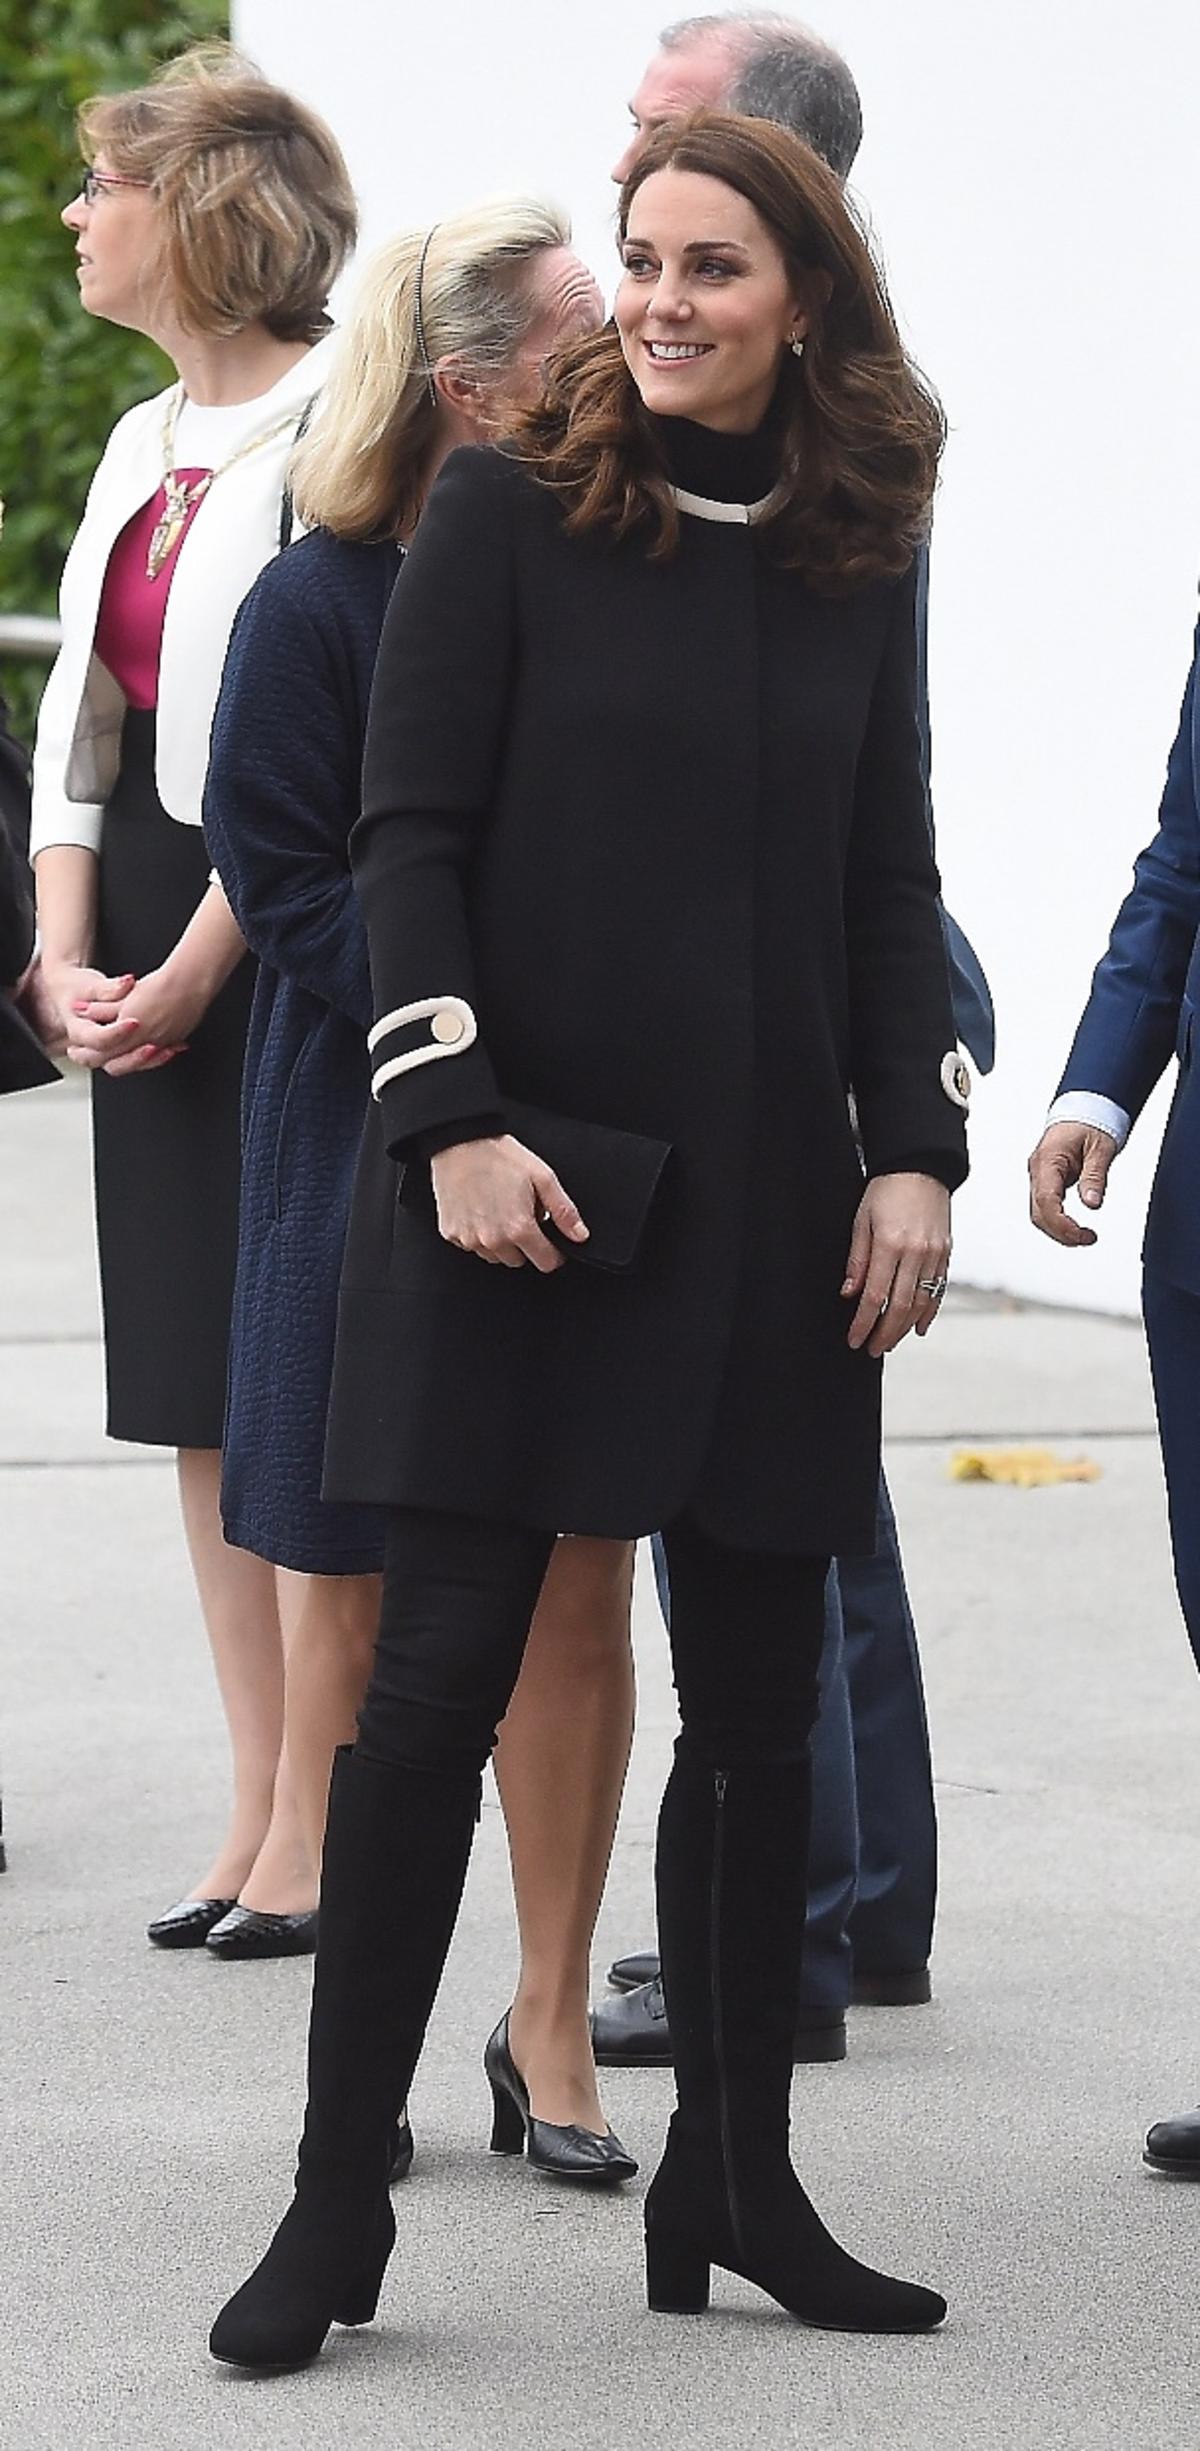 księżna kate middleton w czarnym płaszczy goat w stylu lat 60tych.jpg